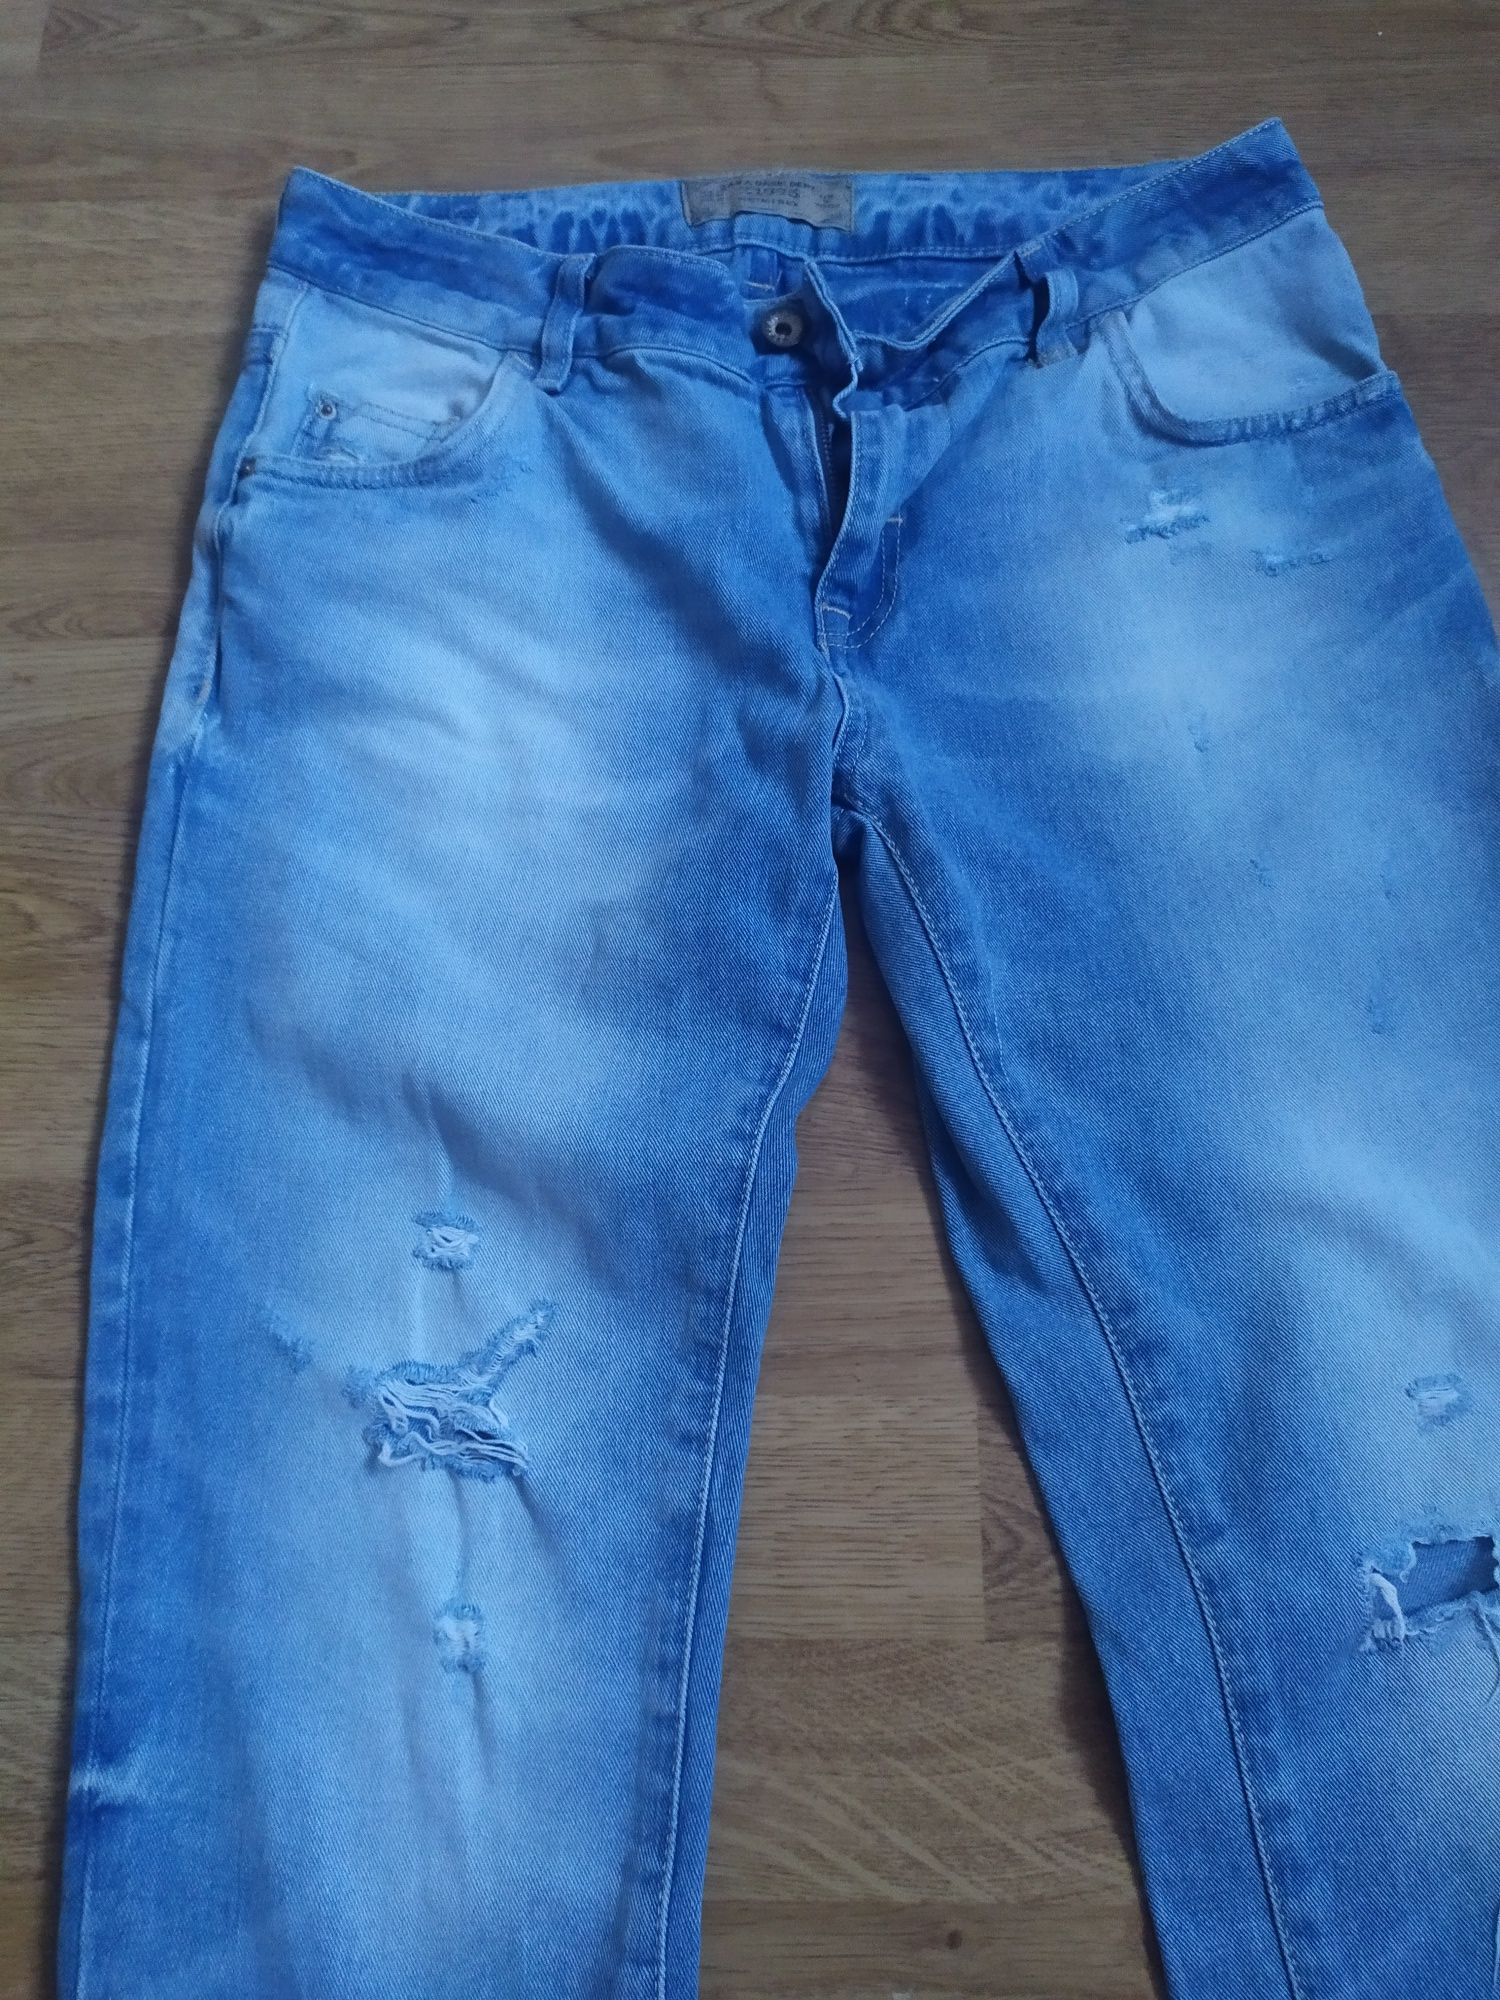 Spodnie zara jeans z dziurami boyfernd S